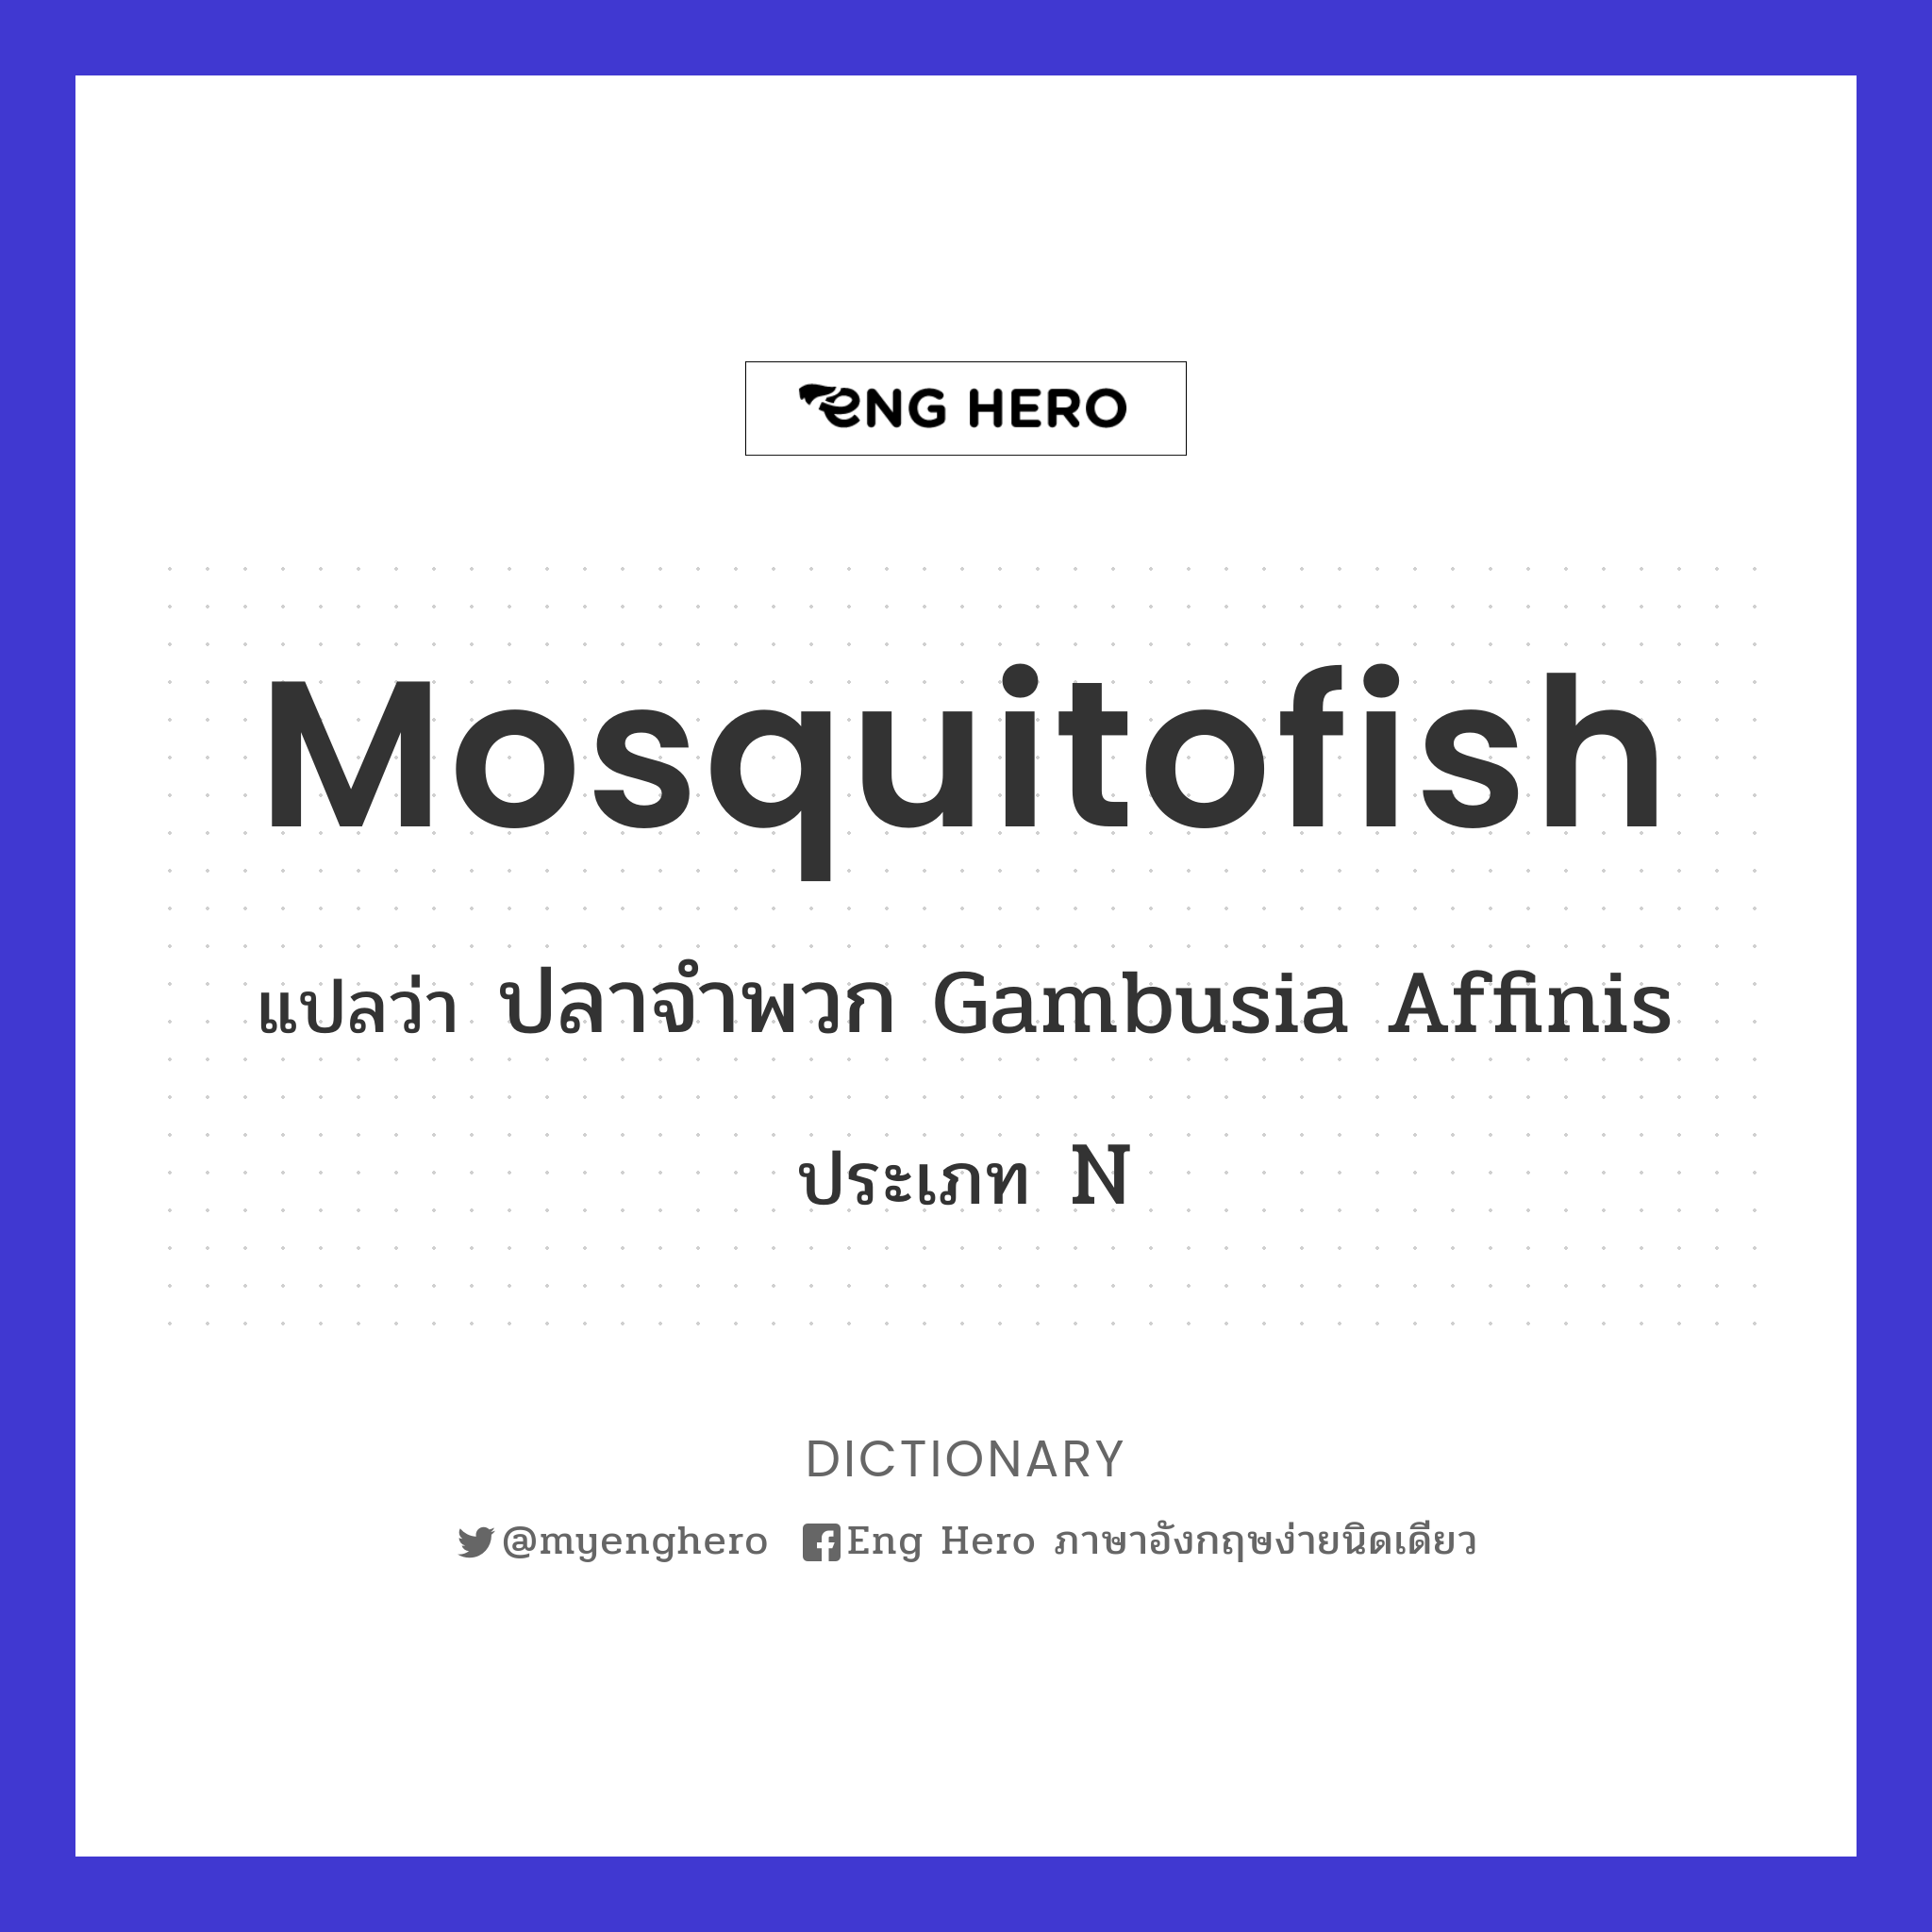 mosquitofish